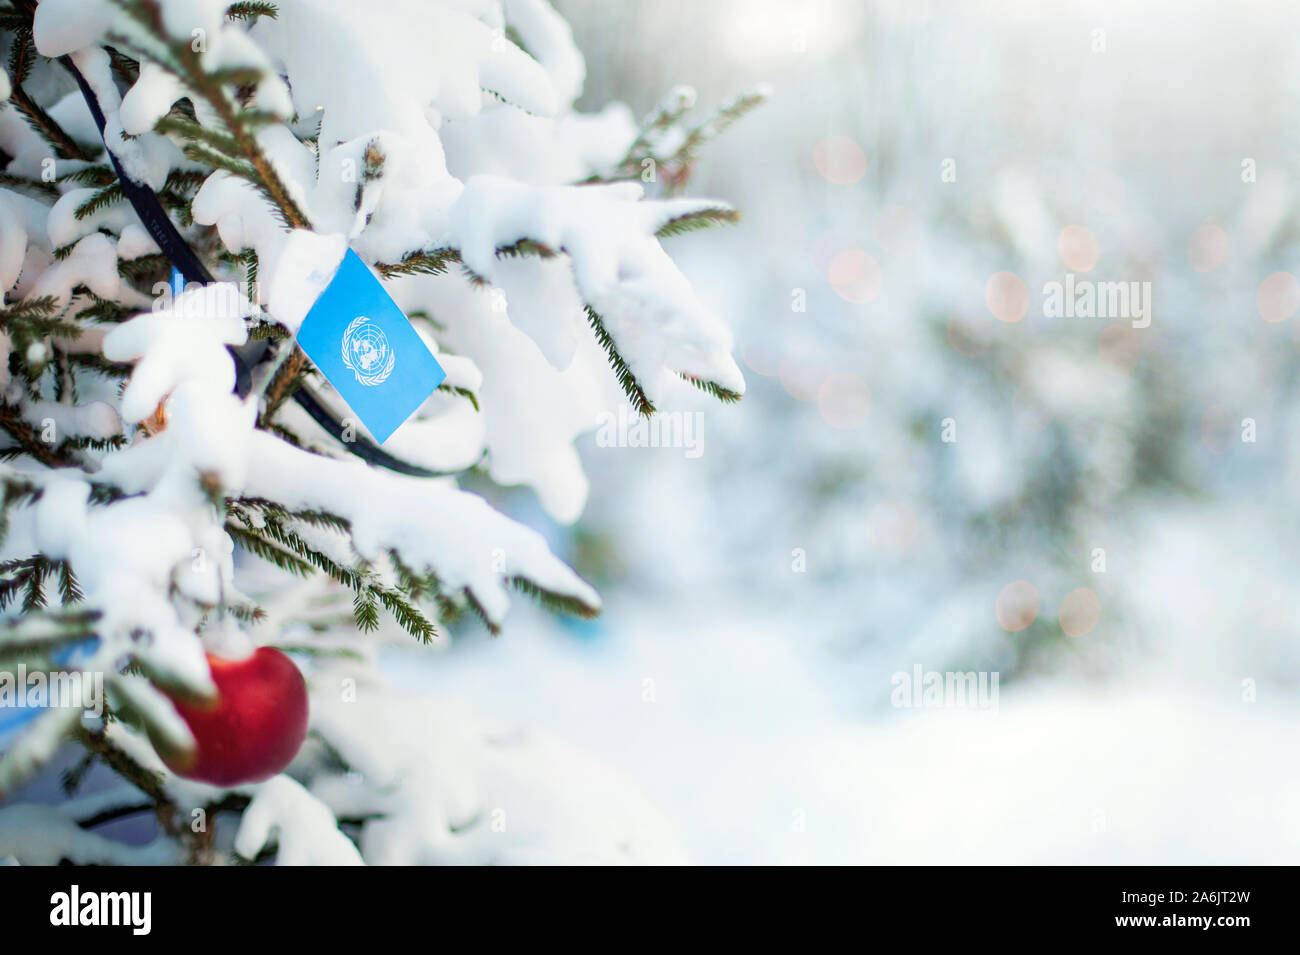 Weihnachten Vereinten Nationen. Xmas Tree mit Schnee, Dekorationen und eine Flagge bedeckt. Verschneite Wald Hintergrund im Winter. Weihnachten Grußkarte. Stockfoto